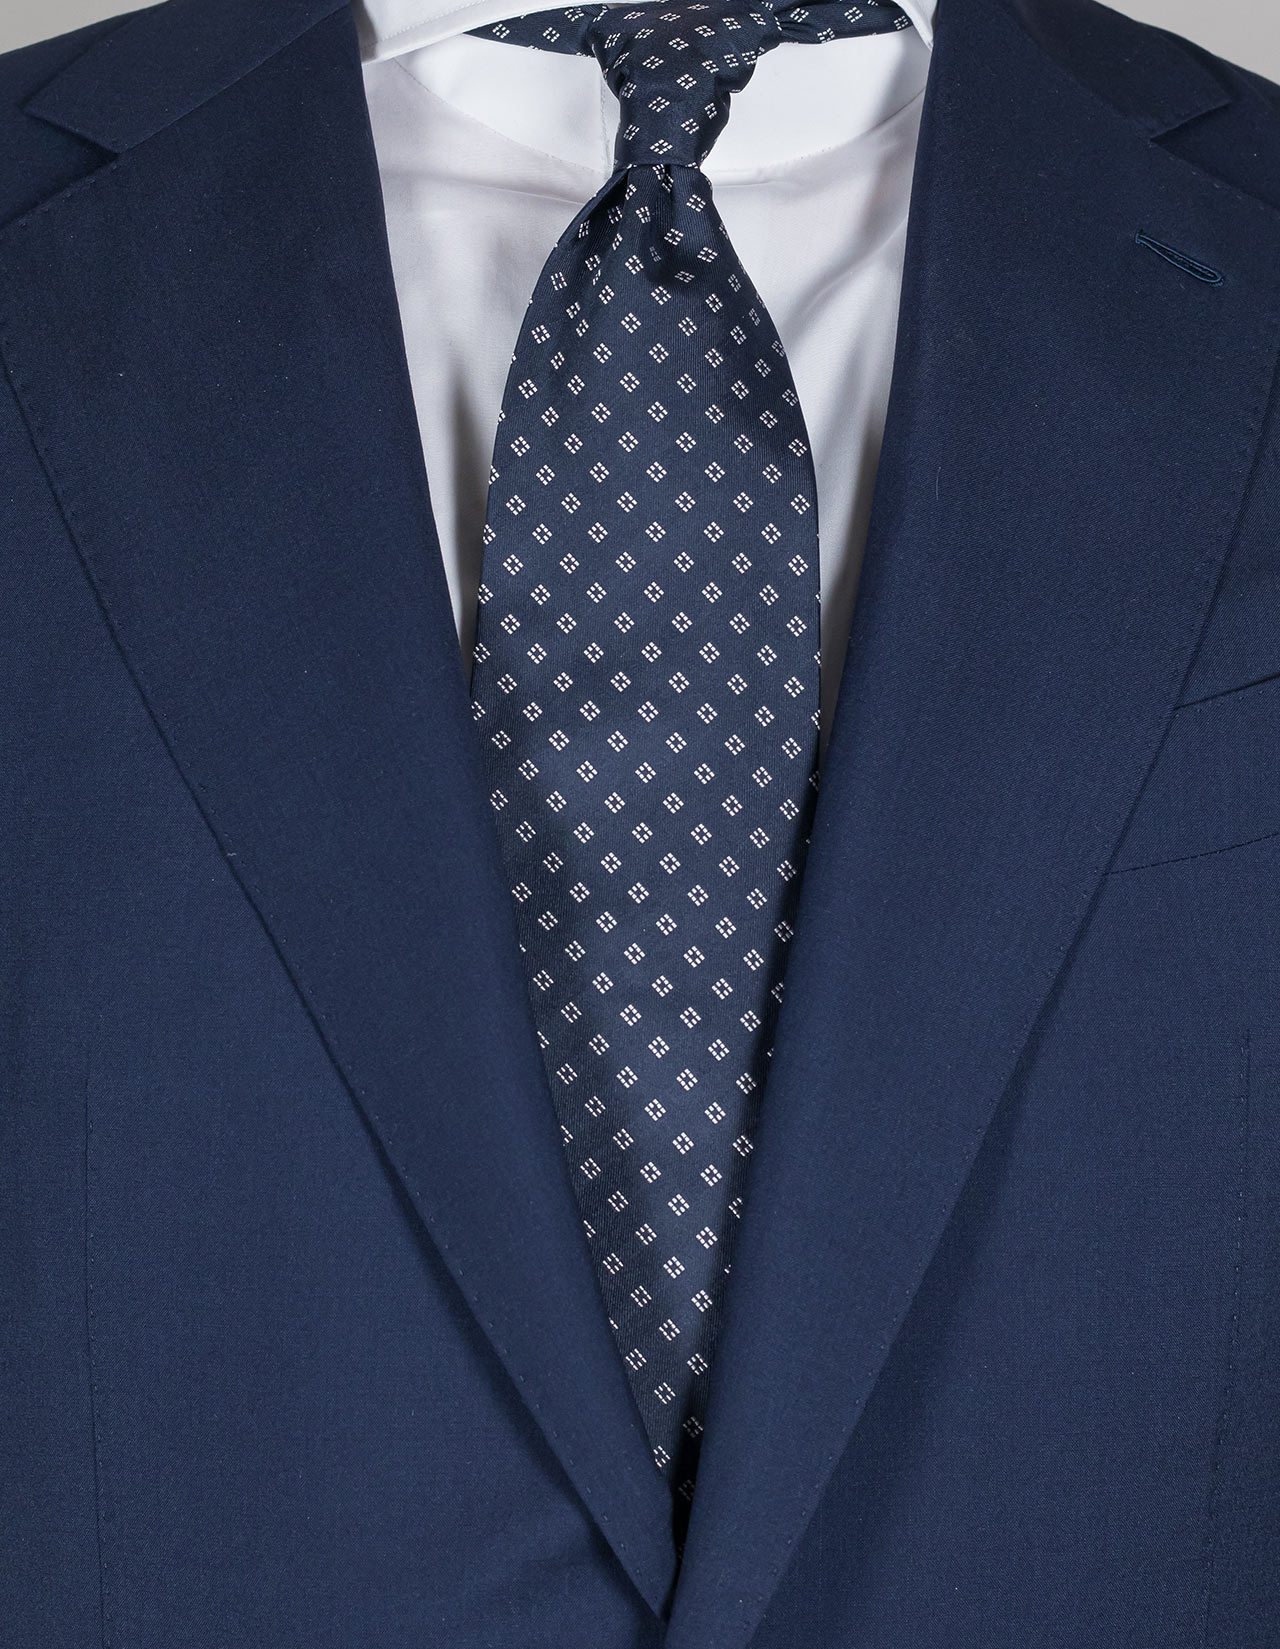 Luigi Borrelli Krawatte in dunkelblau mit weißem Rautenmuster